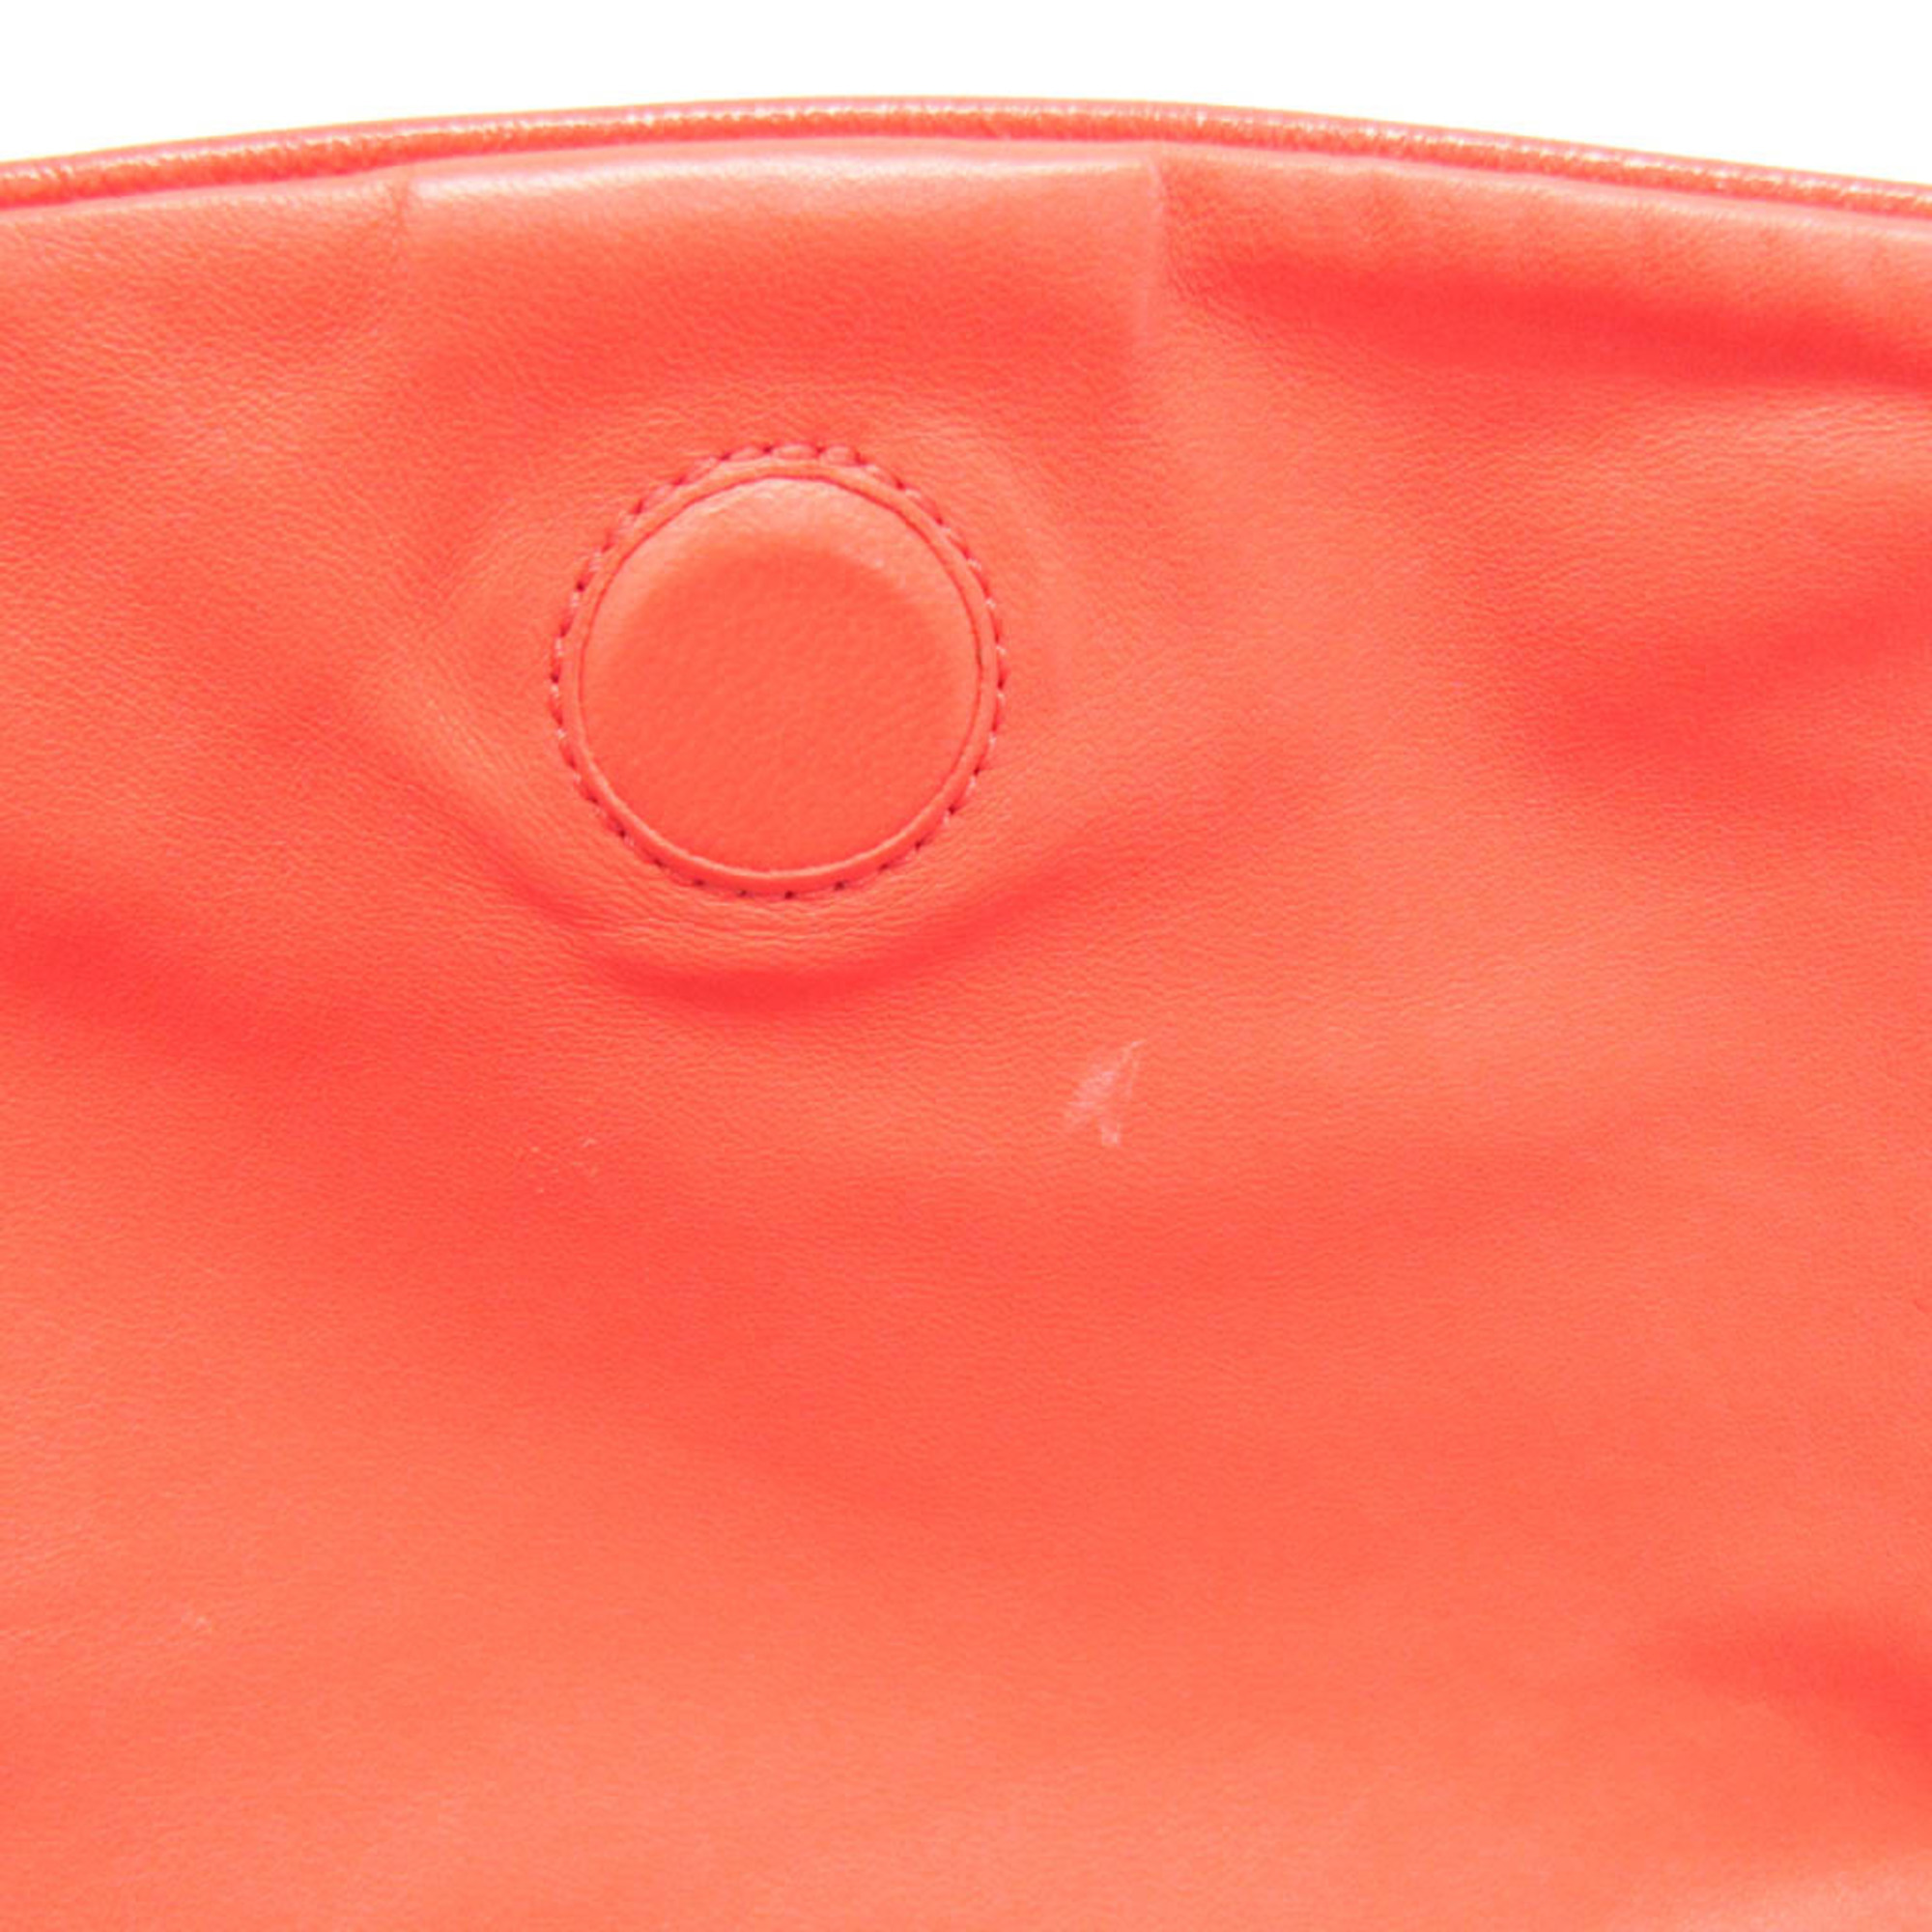 ボッテガ・ヴェネタ(Bottega Veneta) イントレチャート 252008 レディース レザー ショルダーバッグ ピンクオレンジ